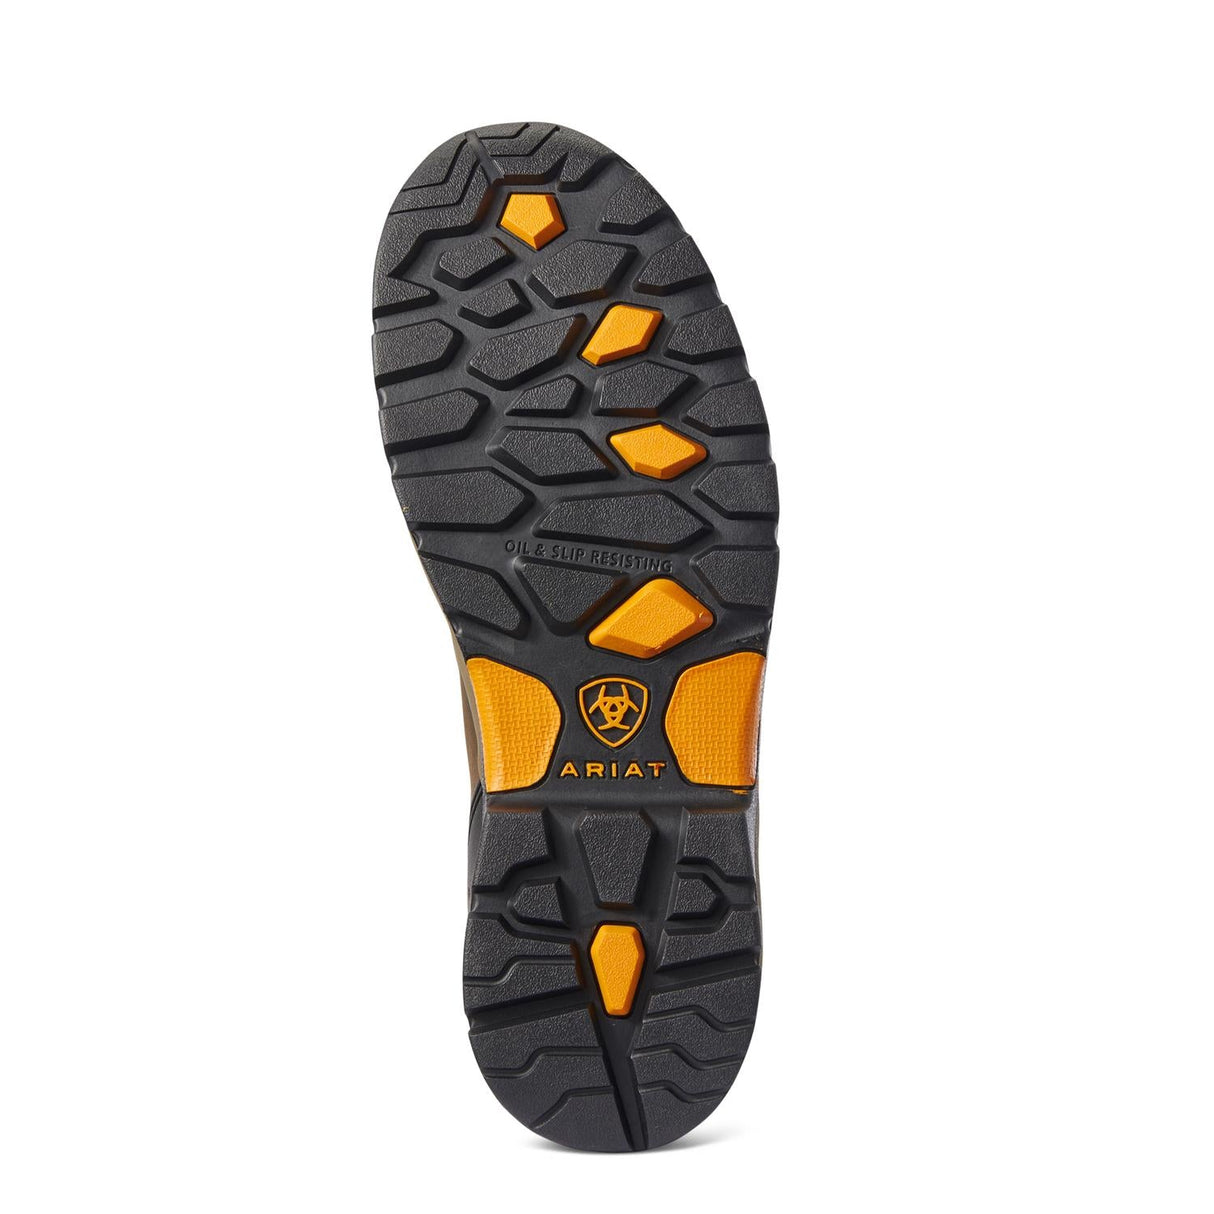 Ariat-Endeavor 6in Waterproof Carbon Toe Work Boot Chocolate Brown-10031591-Steel Toes-4